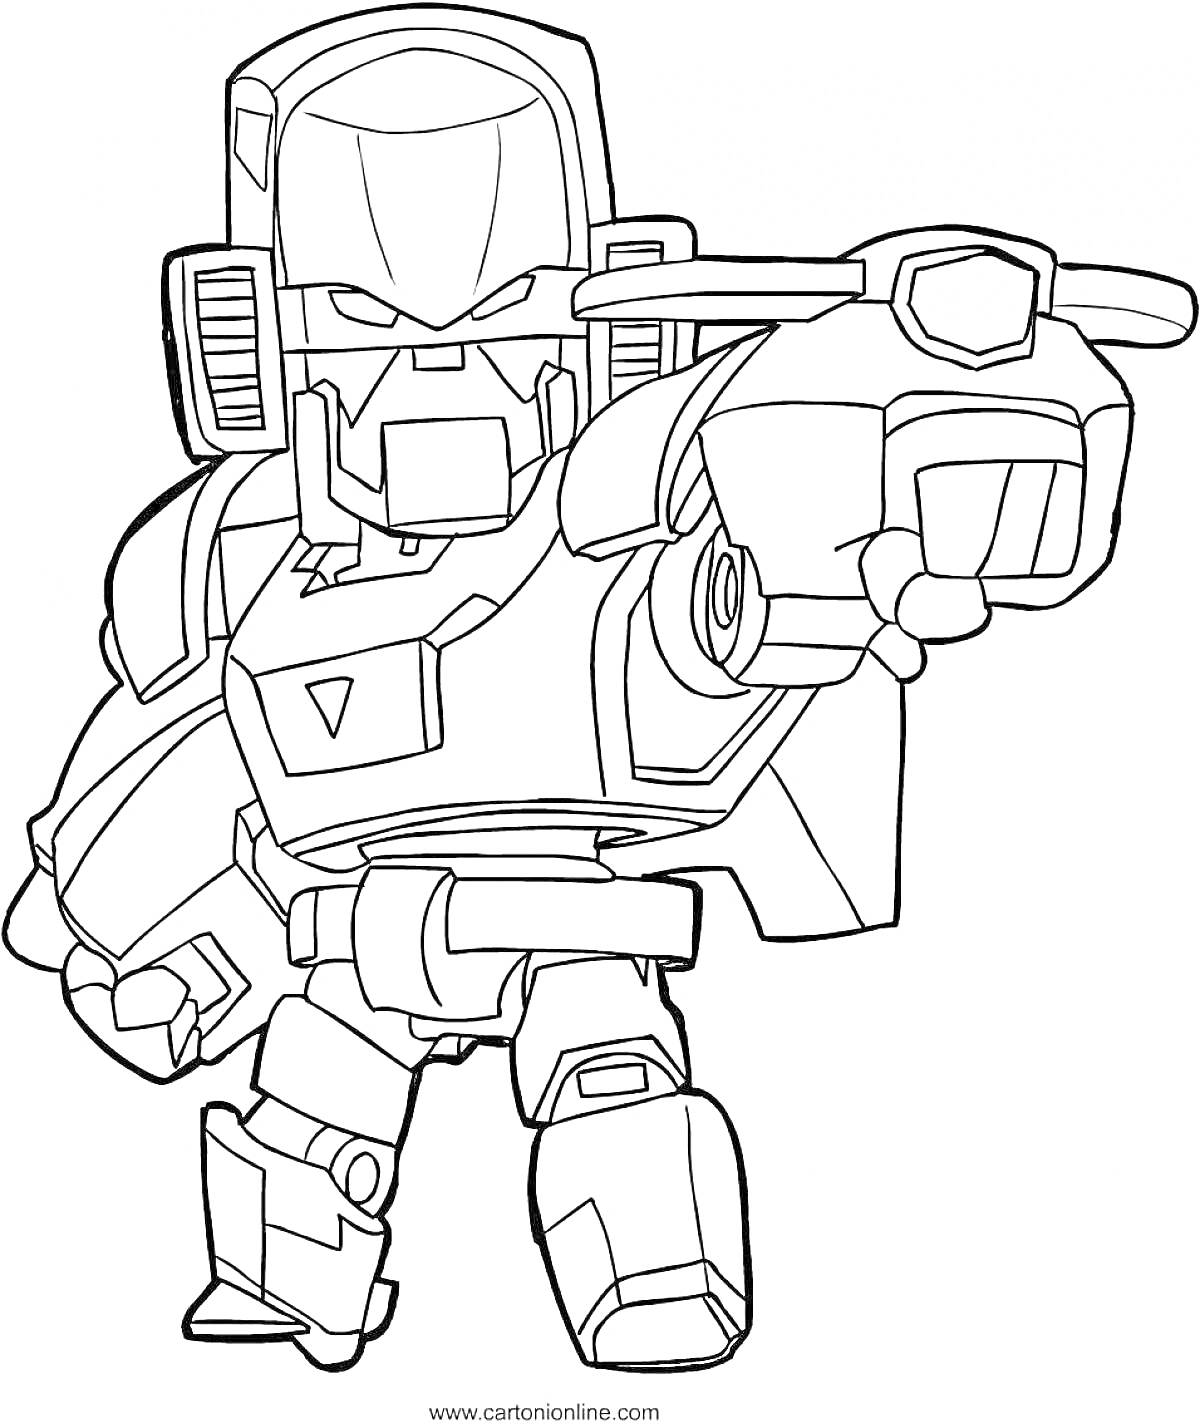 Раскраска Вольт из Браво Старс, робот-воин с пушкой, стоящий в боевой позе